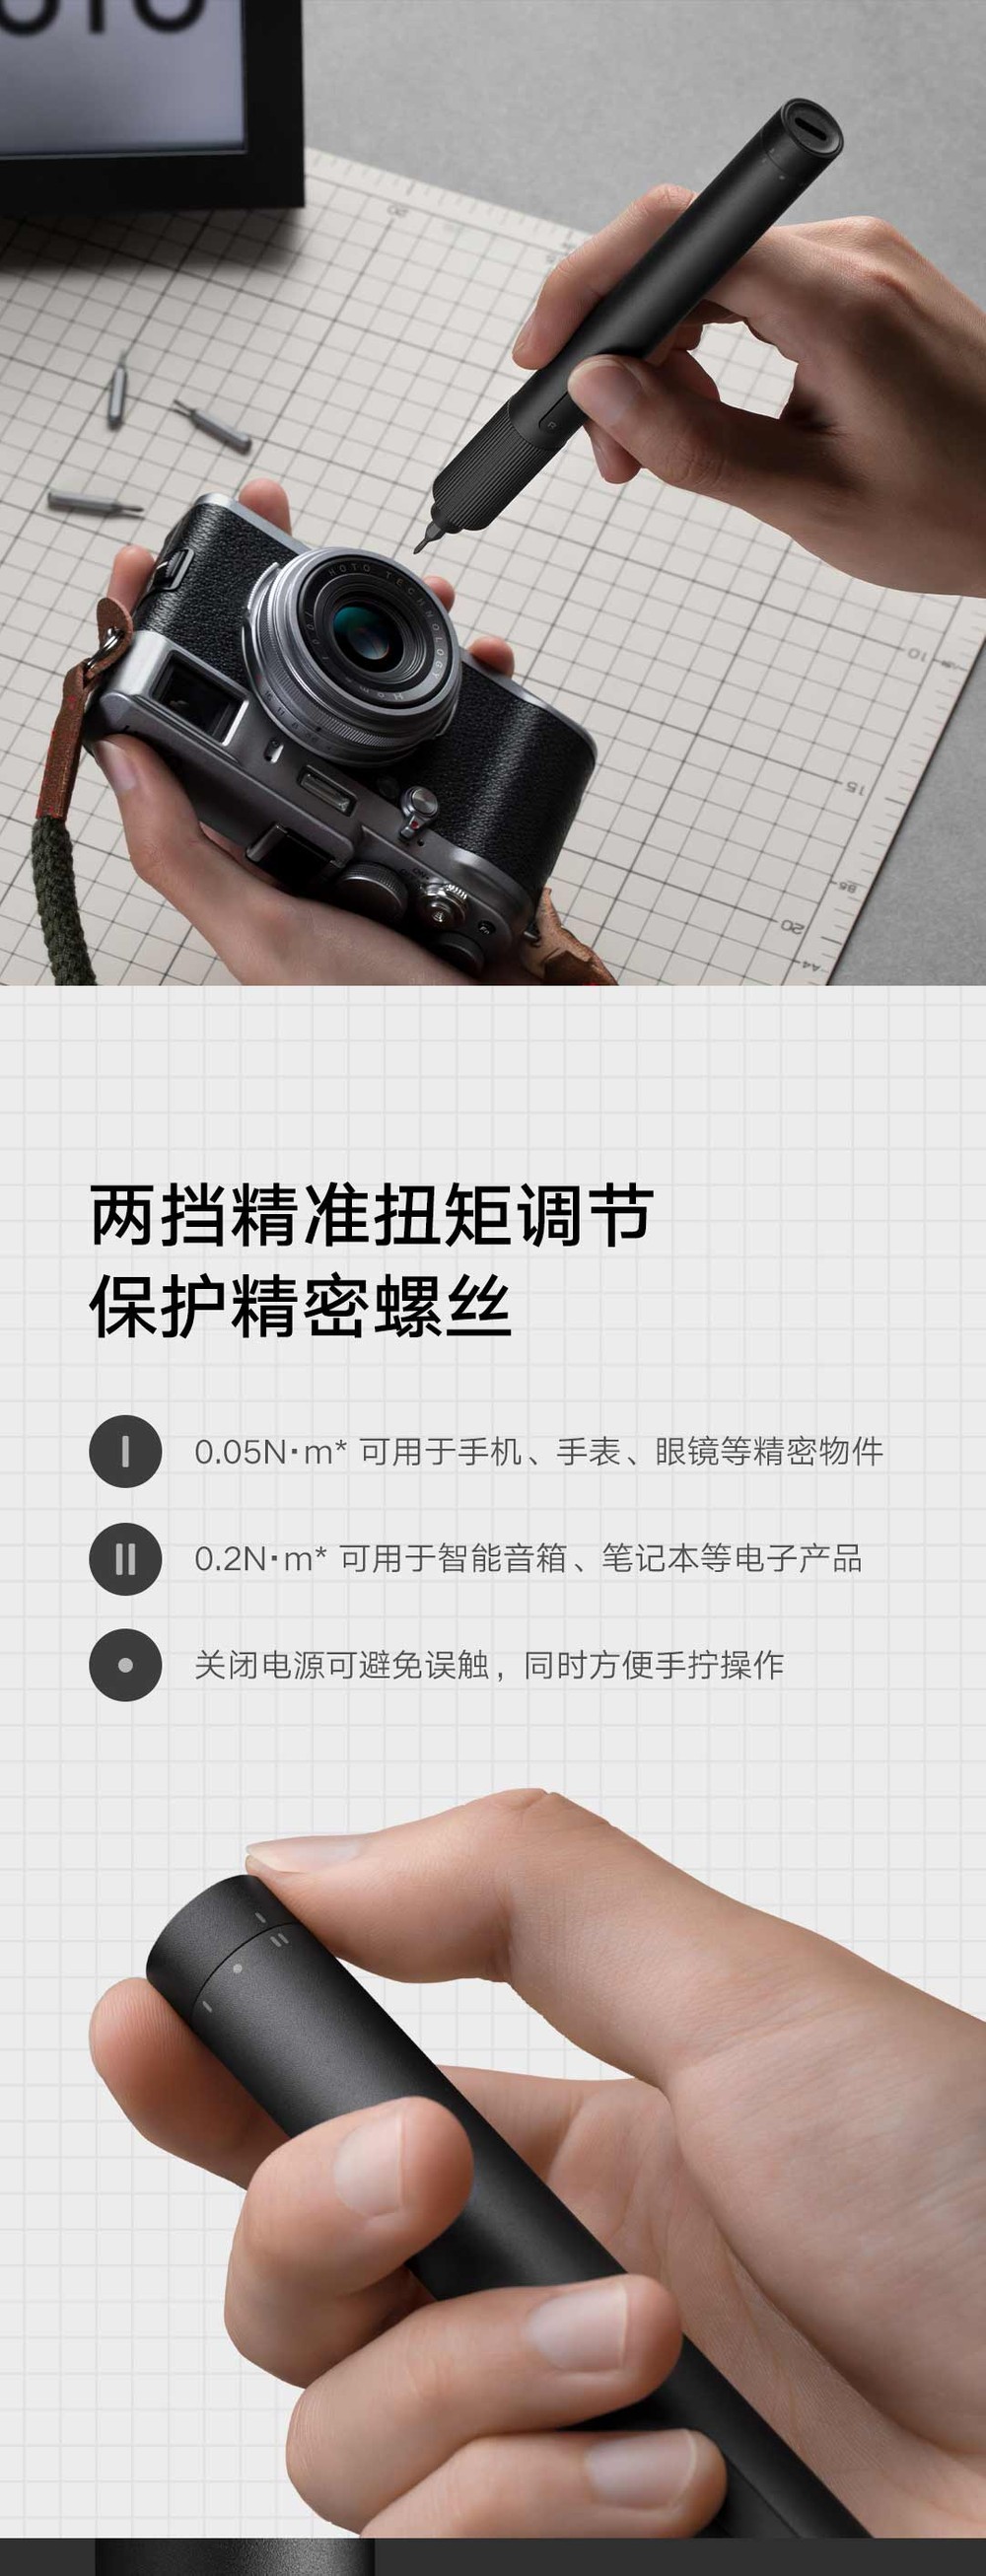 Xiaomi Mijia Chave De Fenda Elétrica 350mah 200rpm